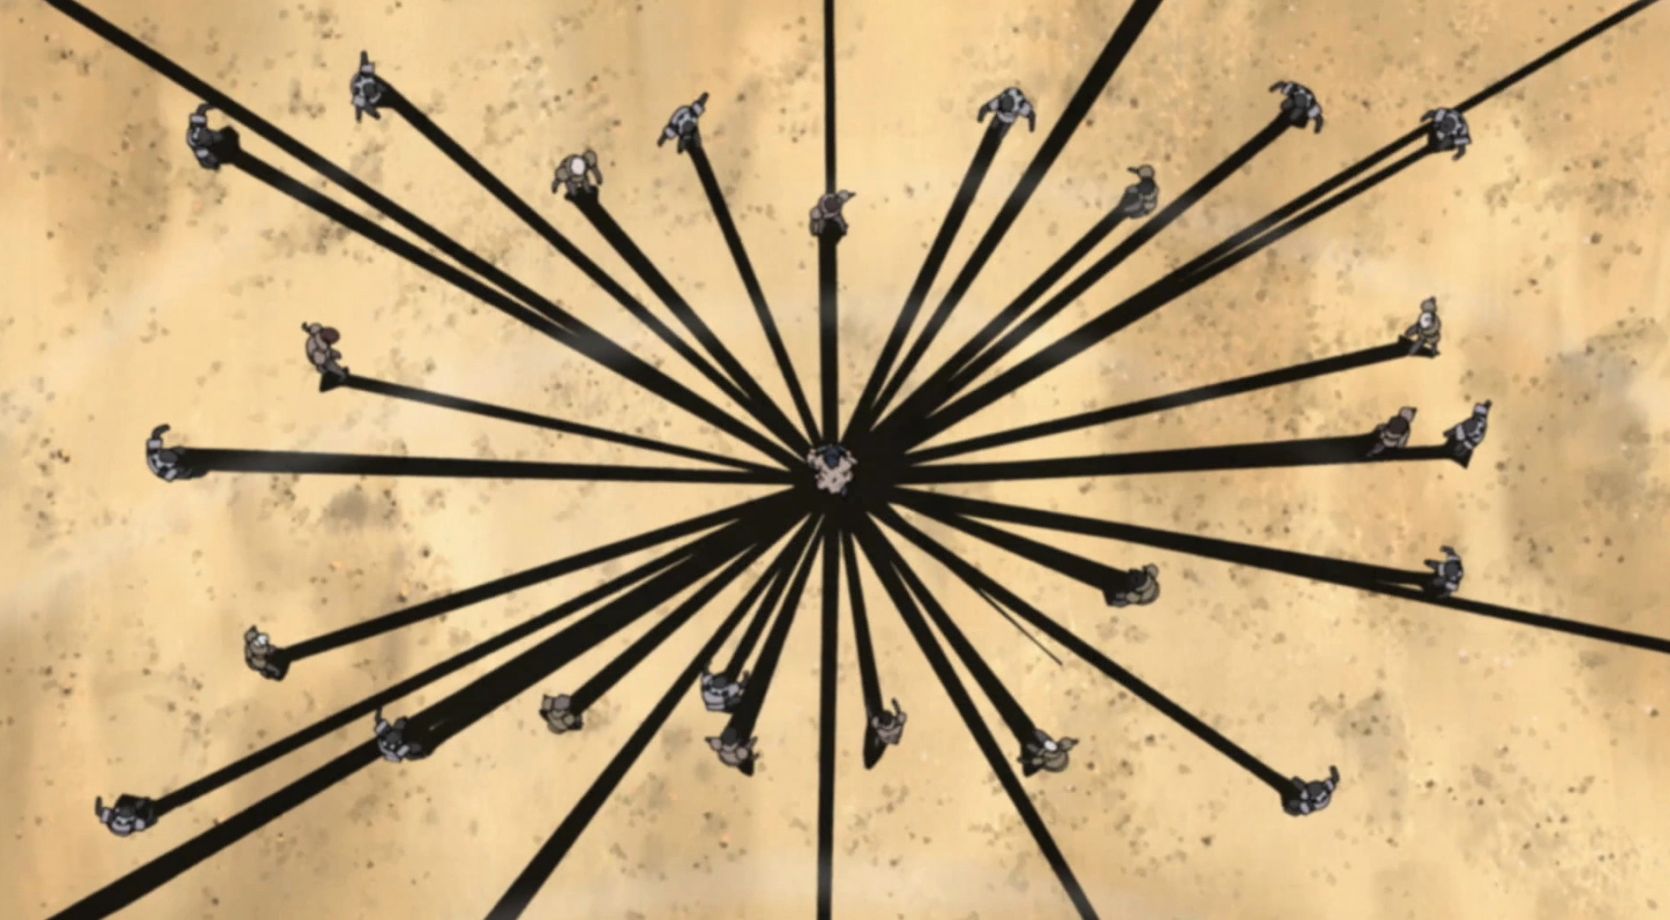 Shikakau Nara Uses The Black Spider Lily Technique In Naruto Shippuden